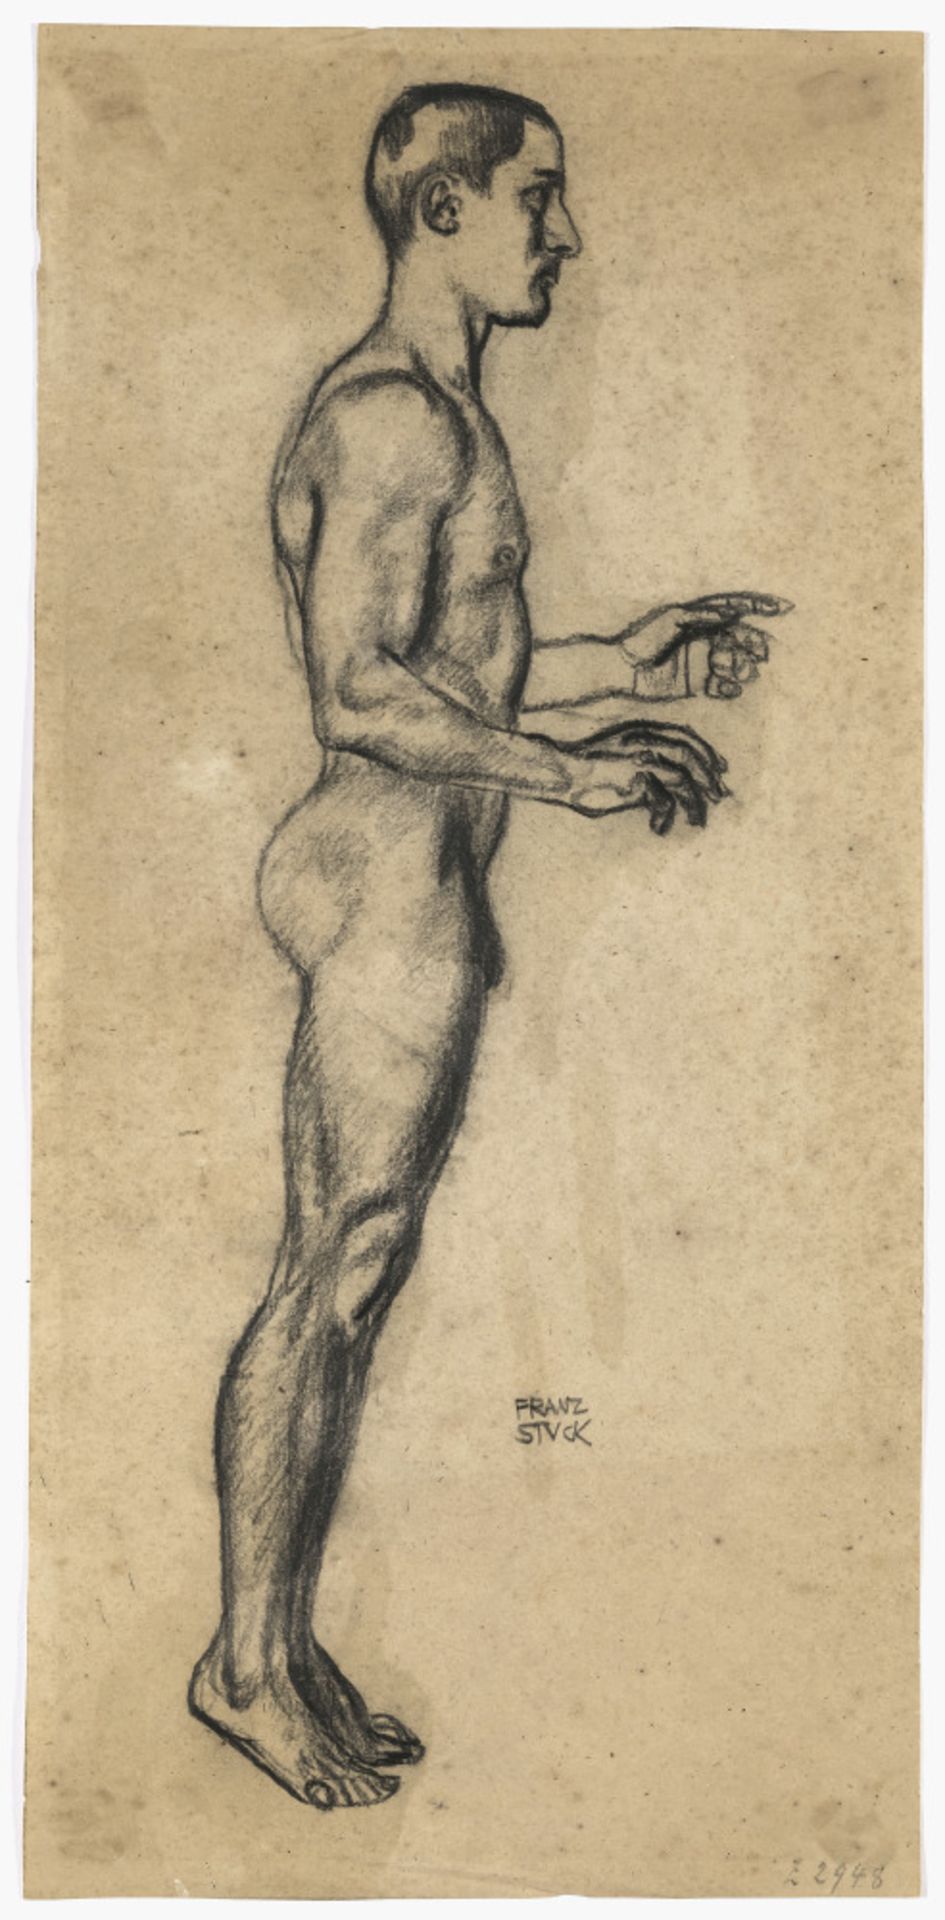 Franz von Stuck - Study of a standing man (draft for the "Liebesschaukel")